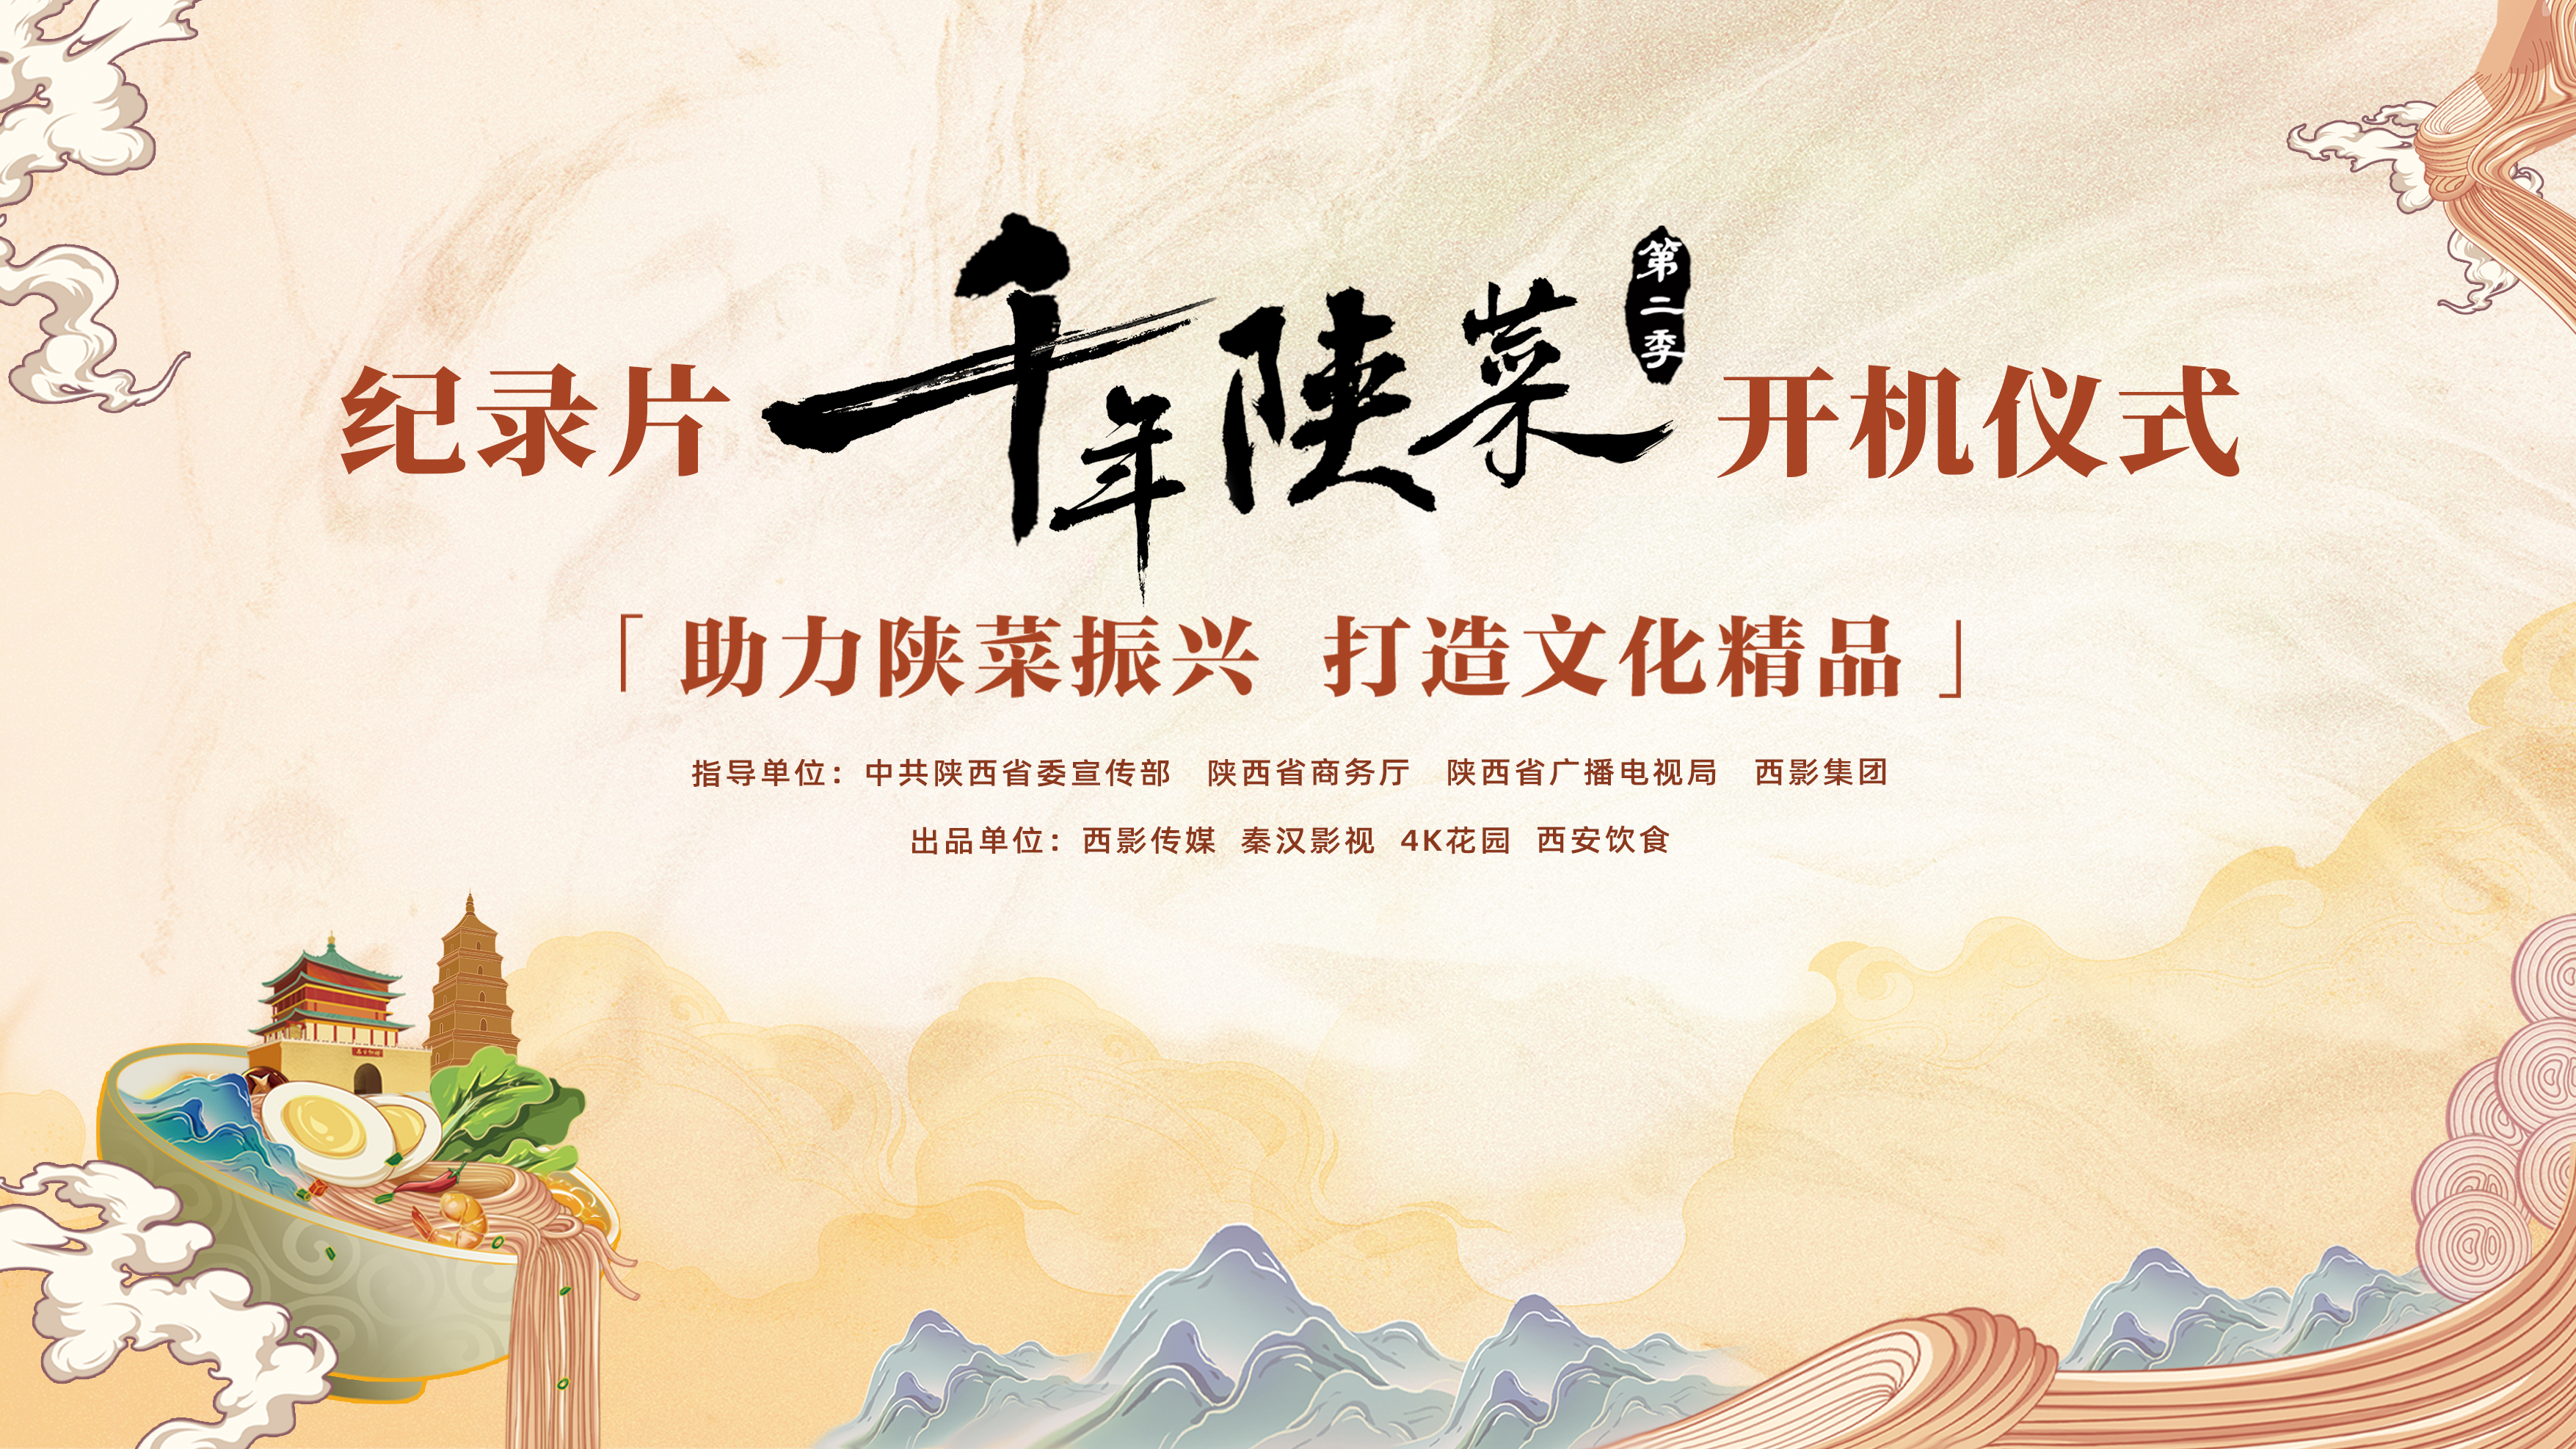 大型8K人文美食纪录片《千年陕菜》第二季开机仪式在西影举行